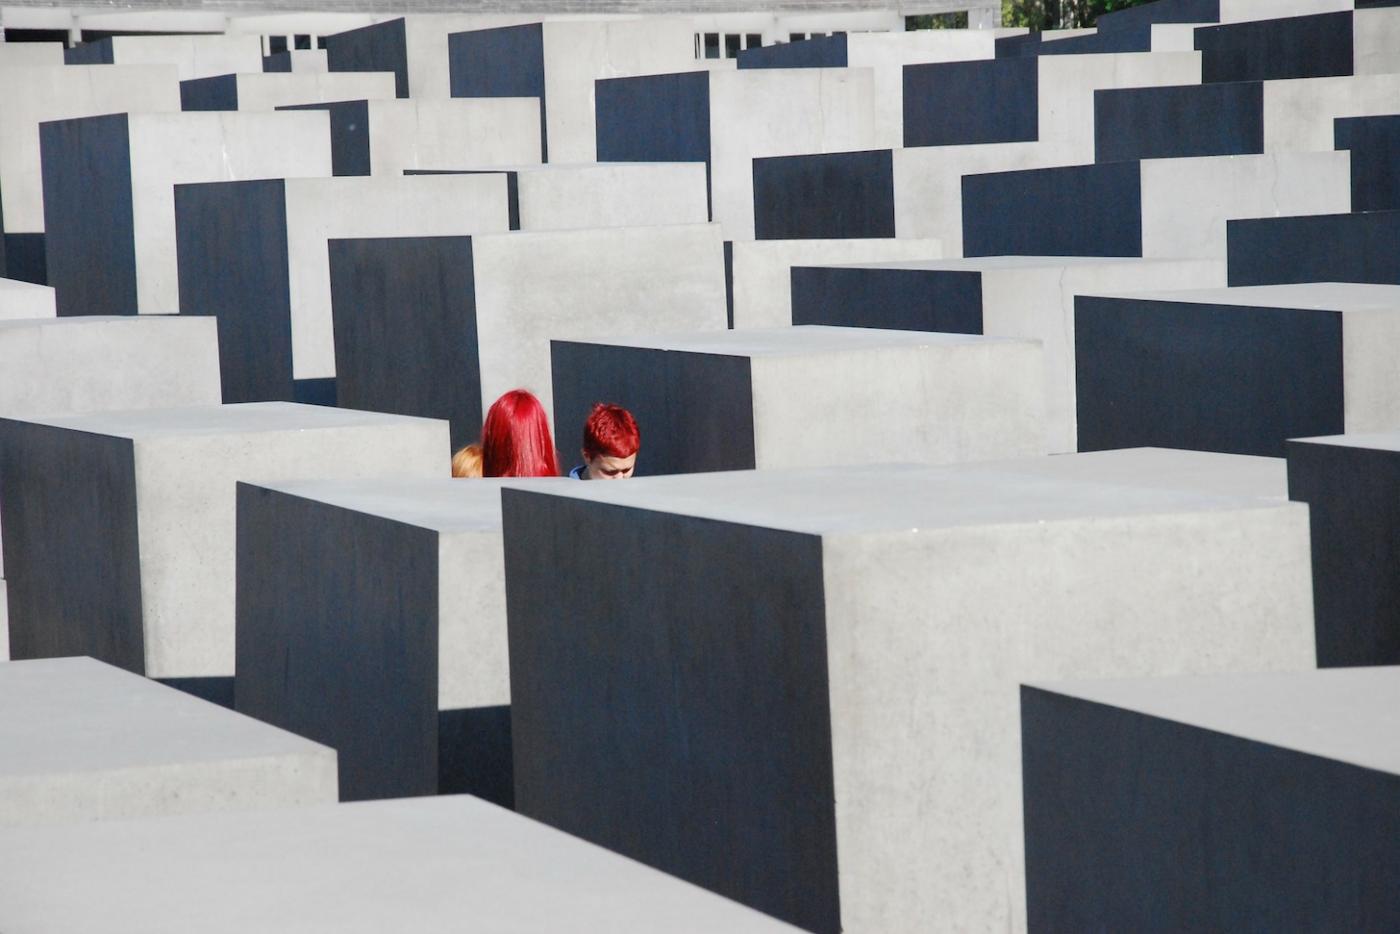 Visitors at the Holocaust Memorial in Berlin